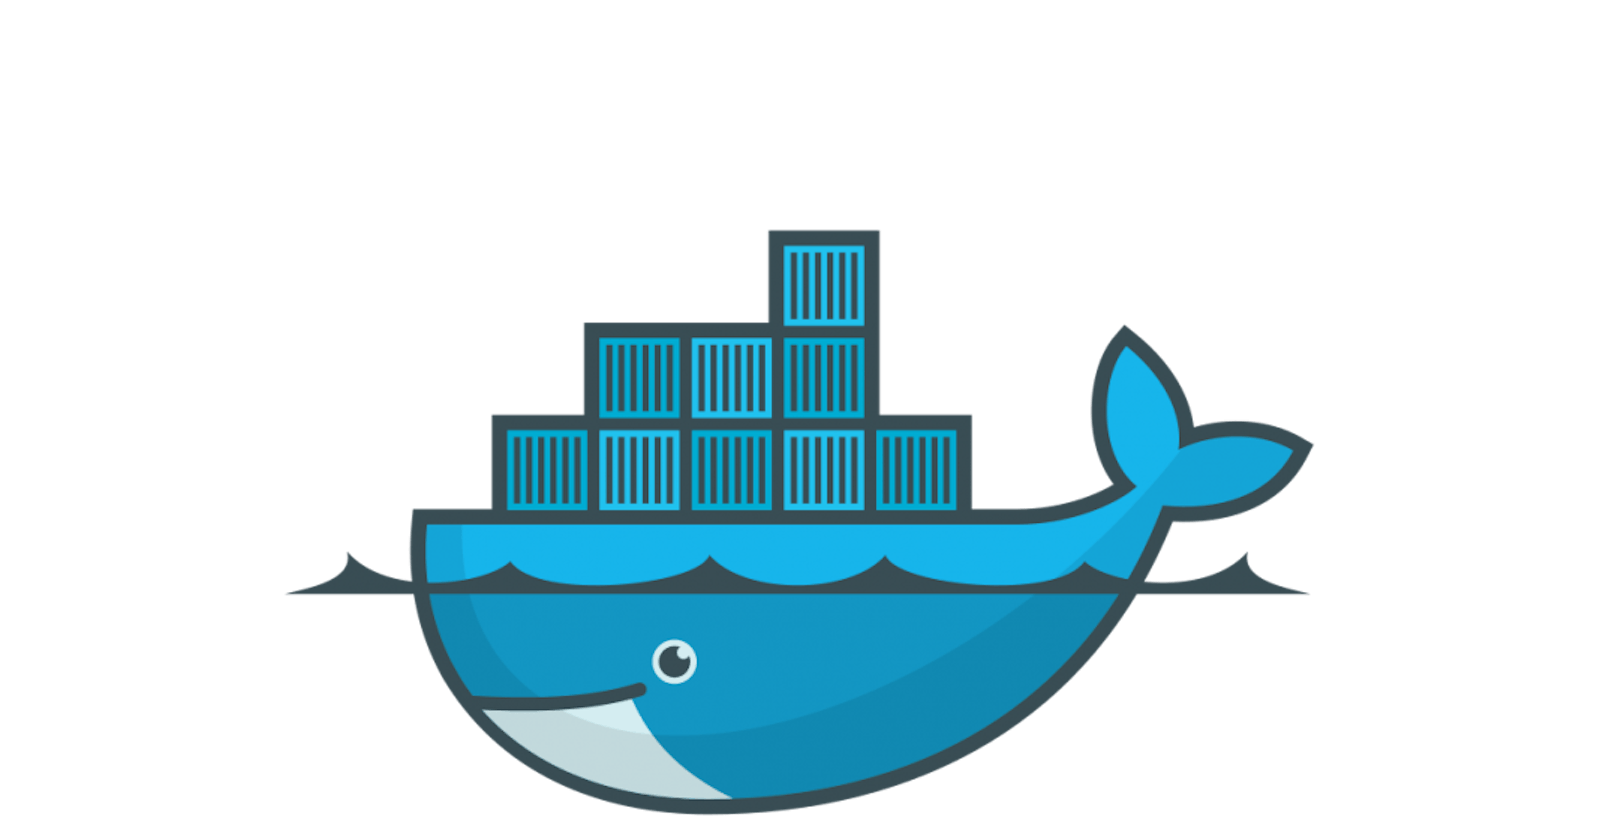 About Docker